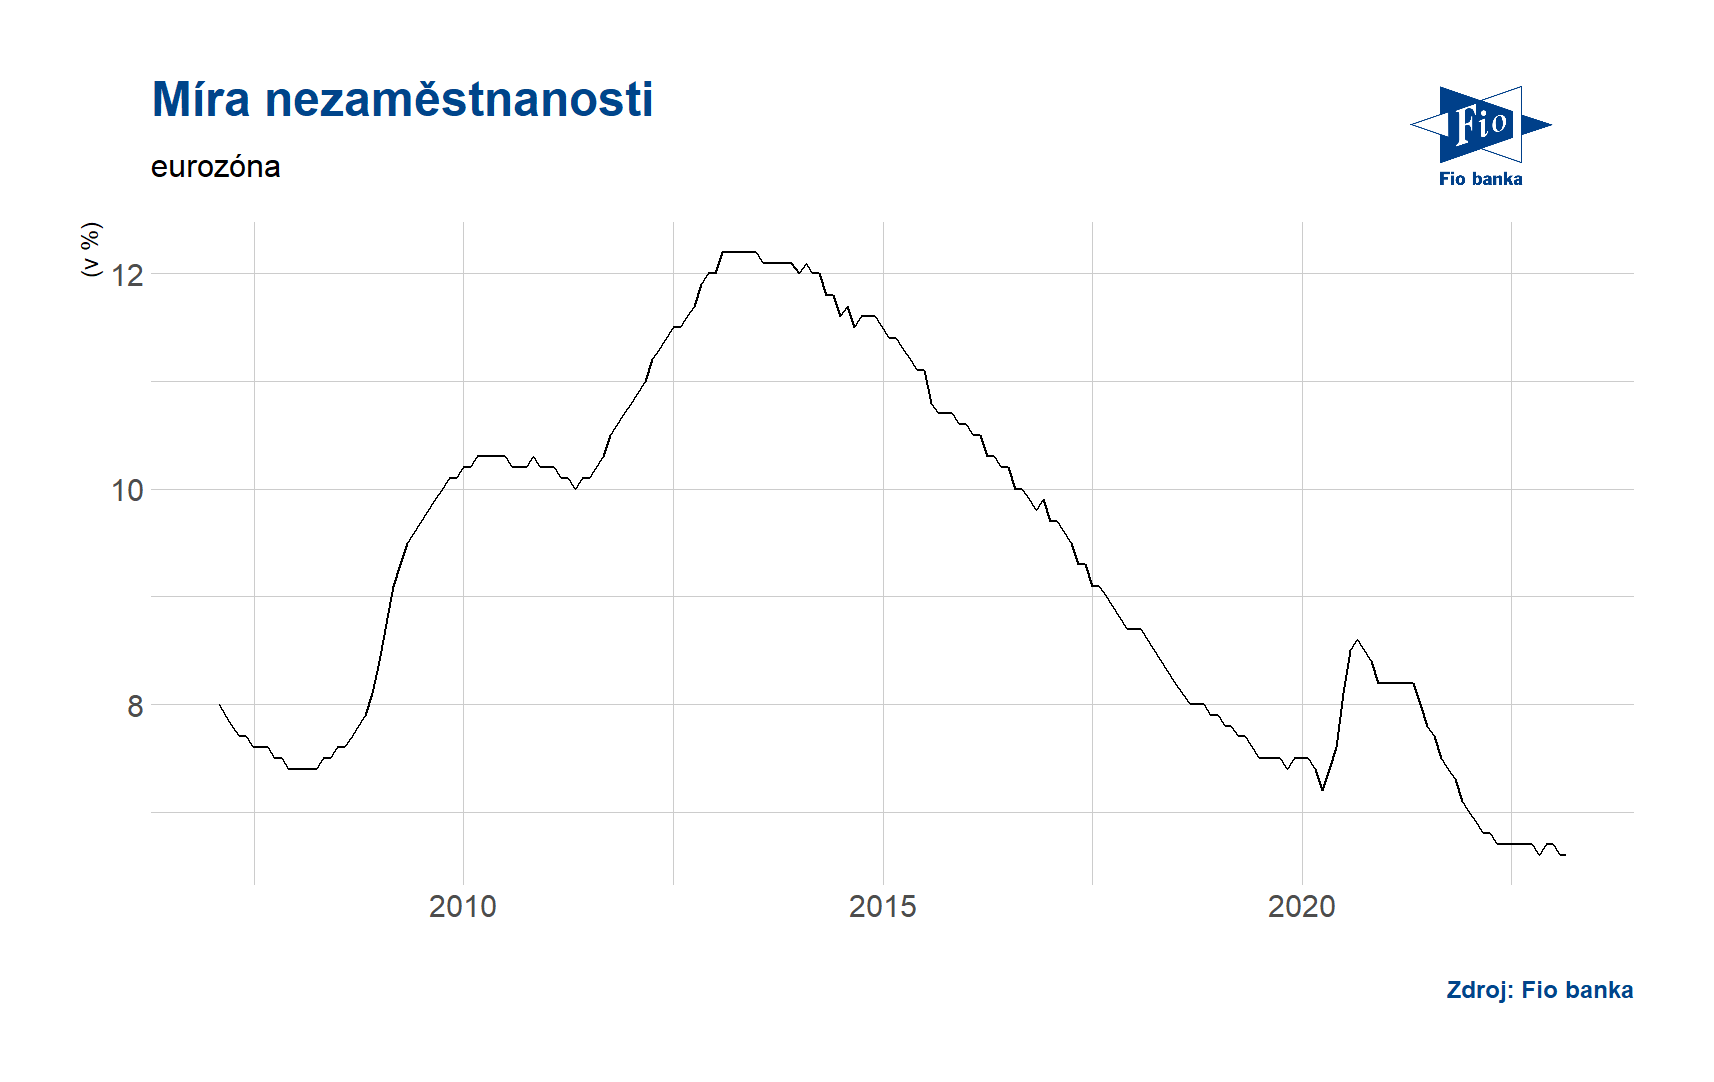 Vývoj míry nezaměstnanosti v eurozóně